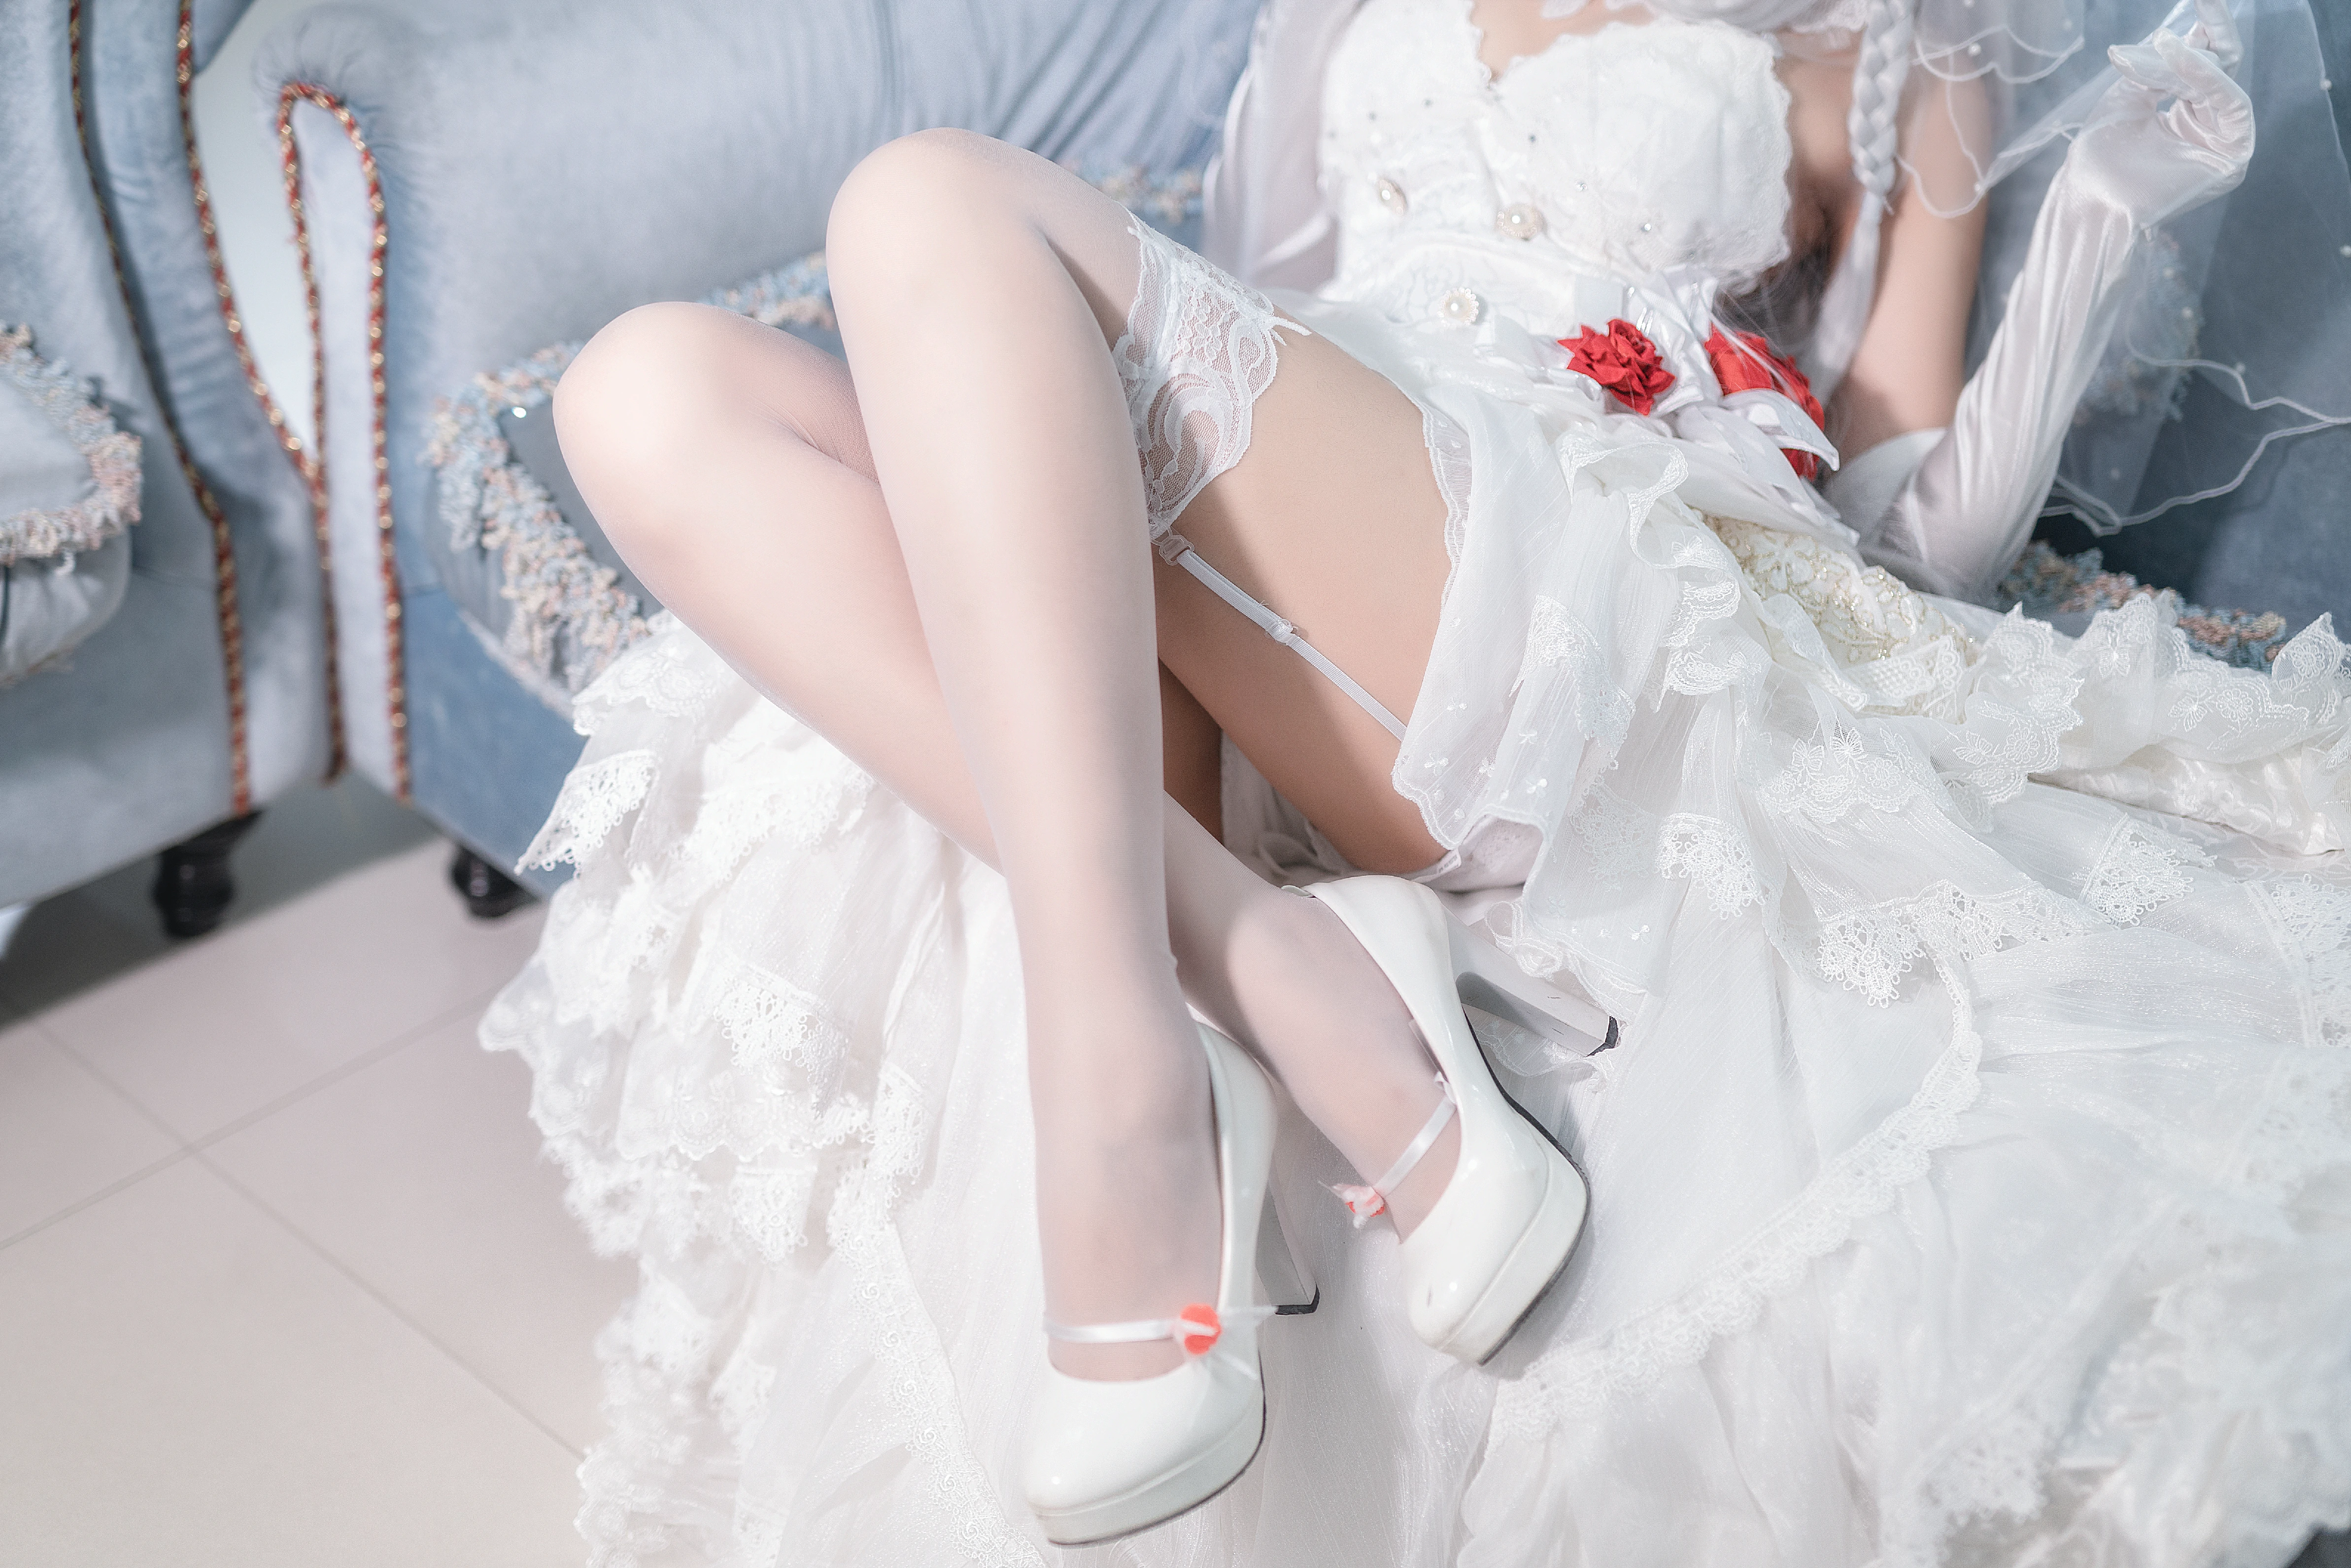 丰满花嫁少女 三度_69 白色抹胸婚纱加白色丝袜美腿性感私房写真,